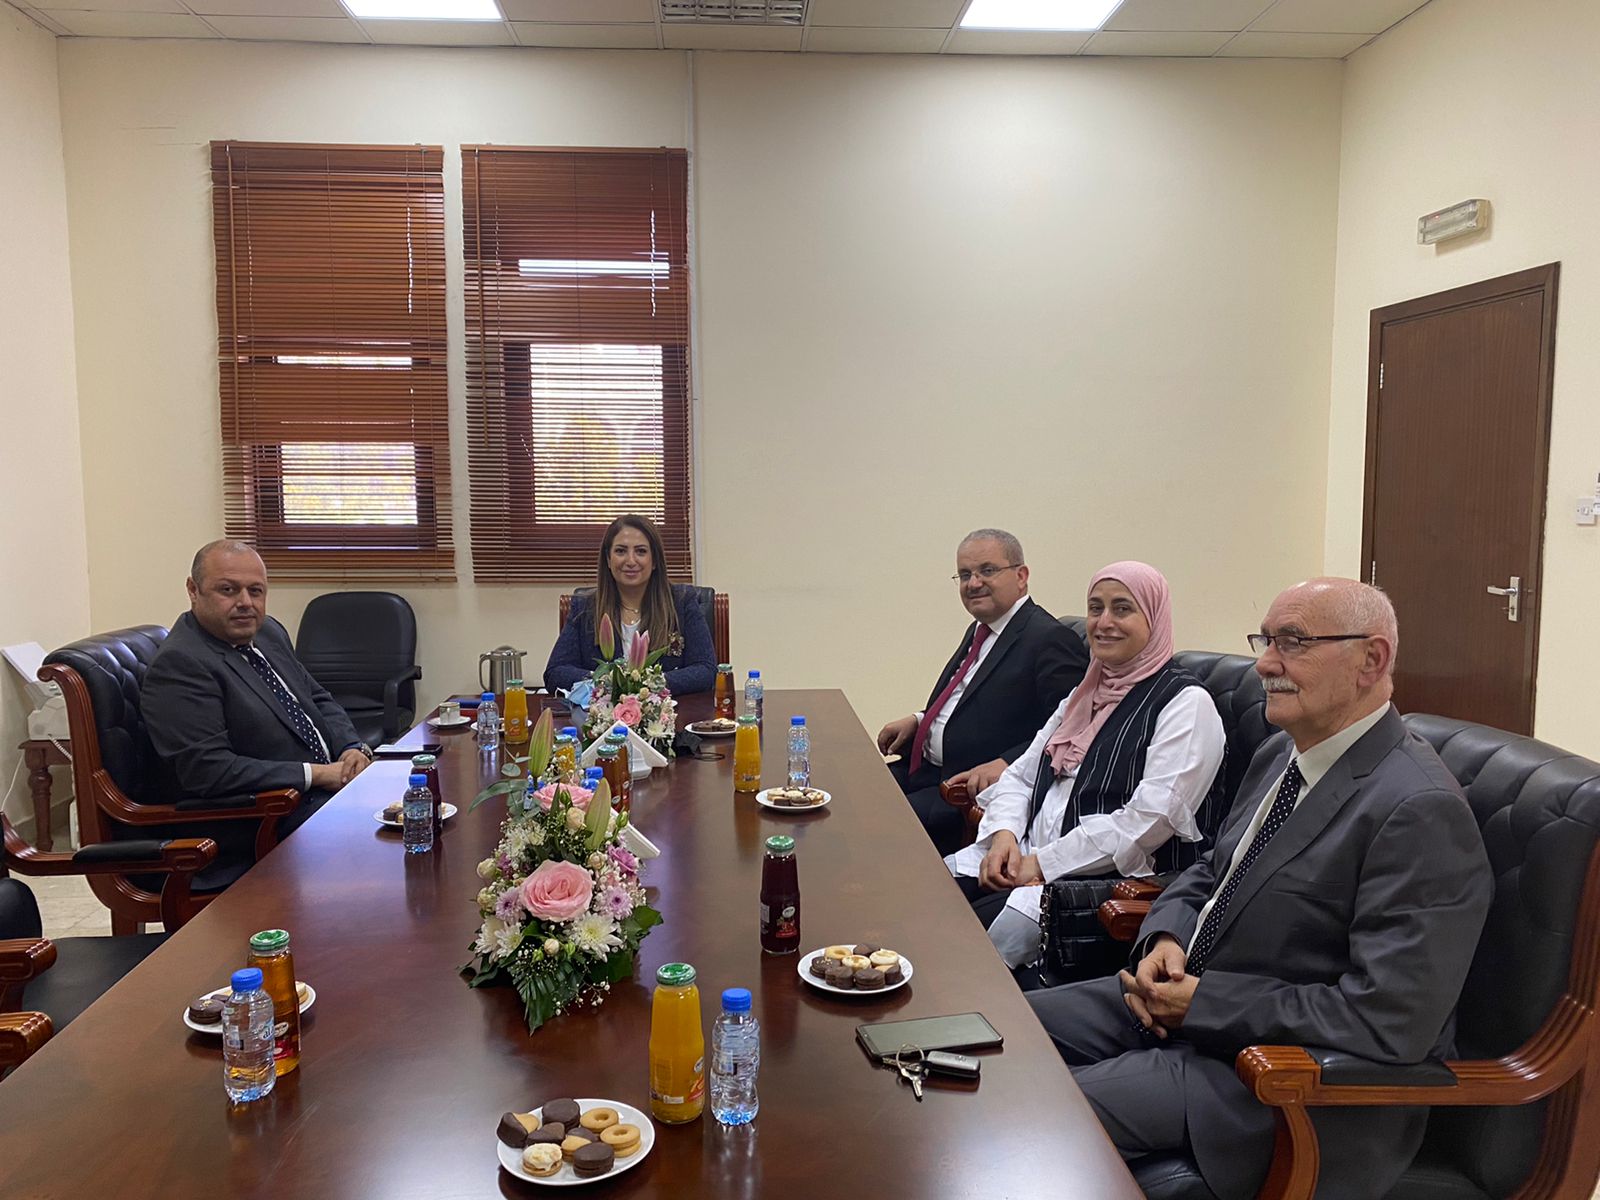 حاكمية جامعة جدارا تلتقي رئيس البعثة الدبلوماسية بالسفارة والجالية الأردنية في أبو ظبي والعين